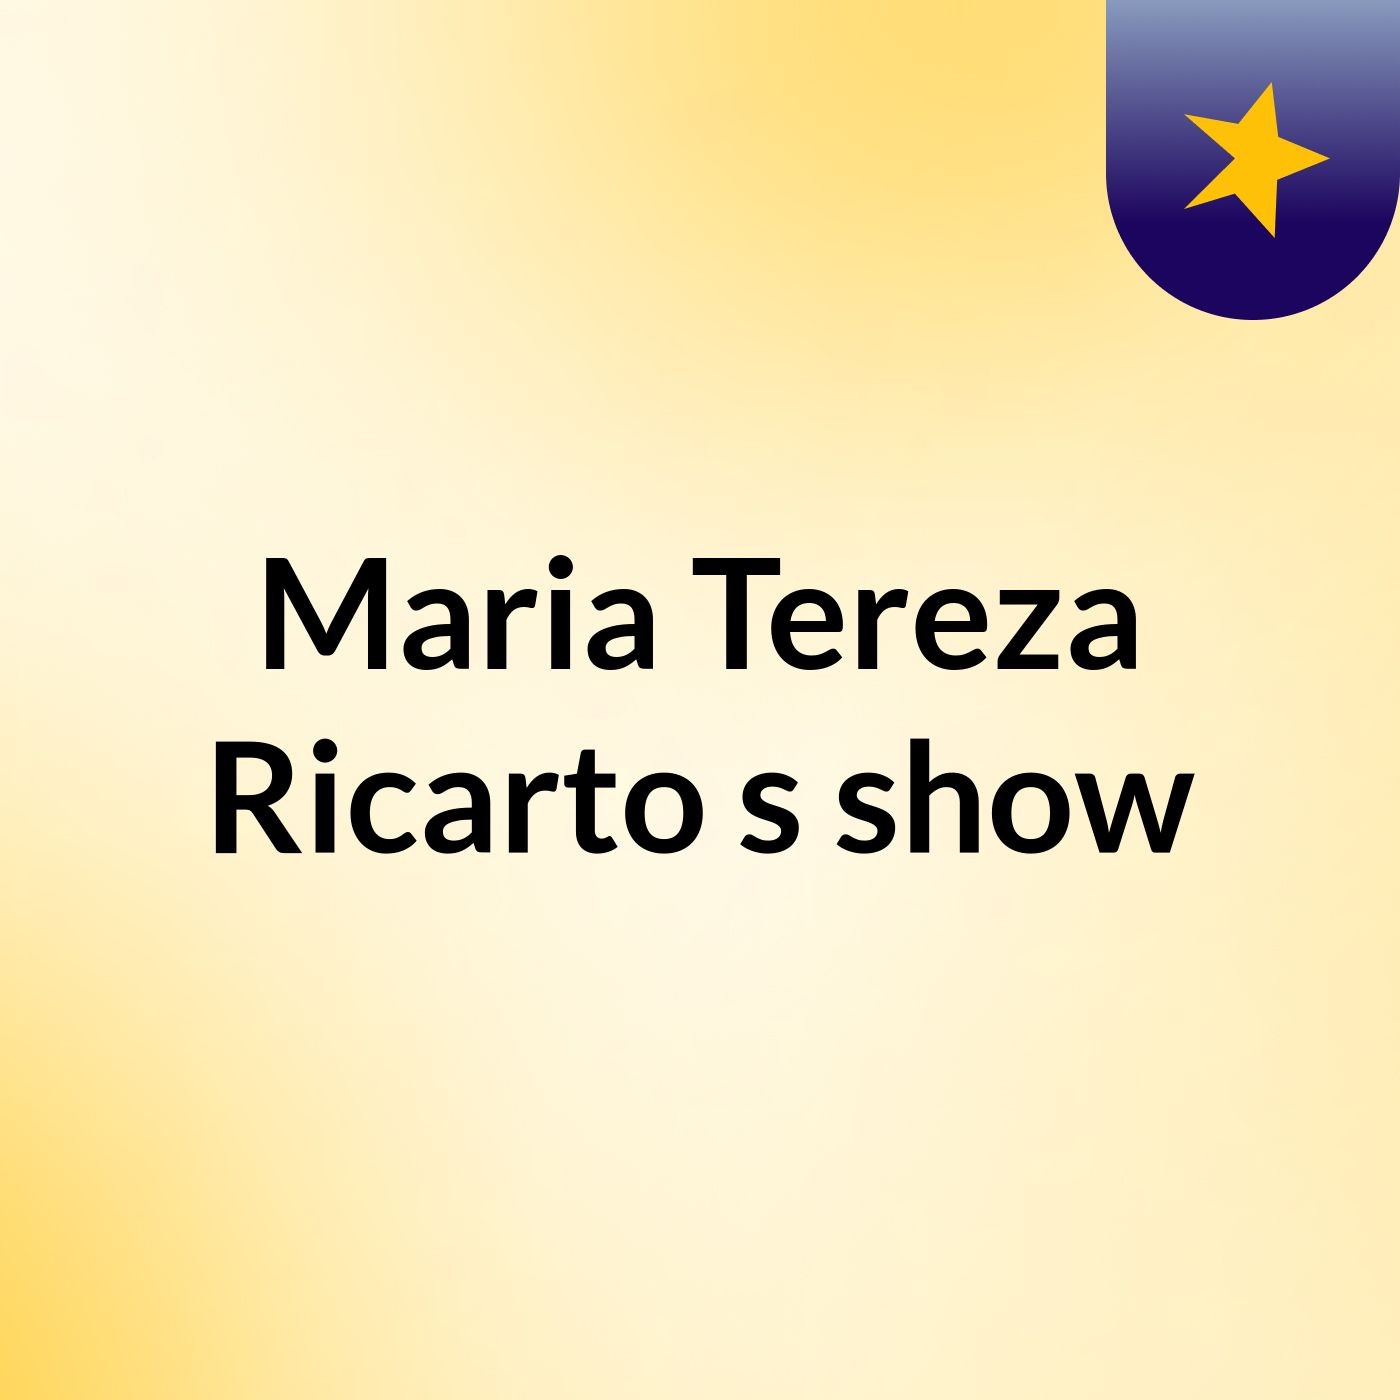 Maria Tereza Ricarto's show